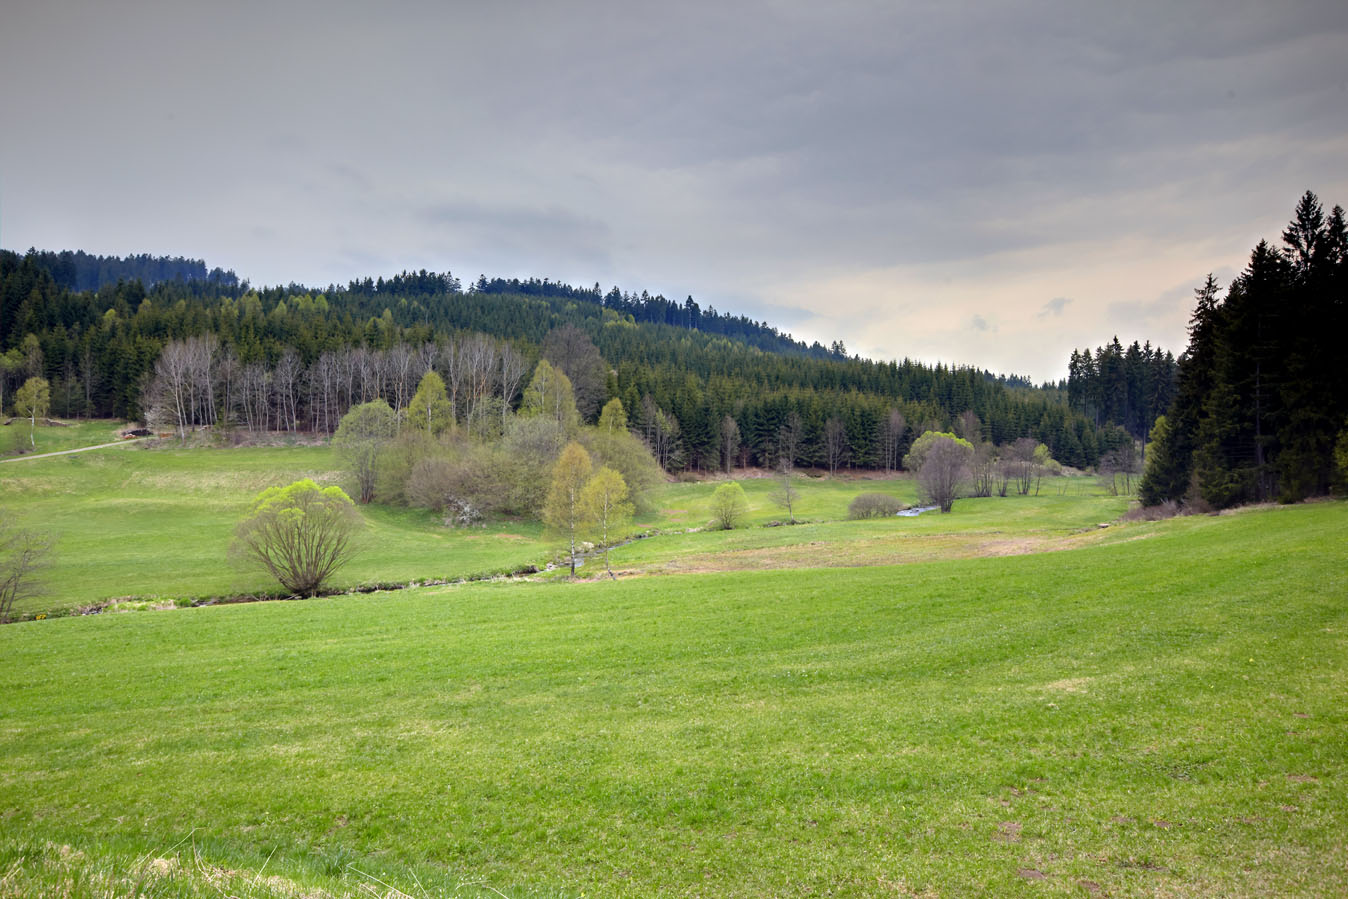 Landschaft im Waldviertel mit Wiesen, Sträuchern und im Hintergrund ein Nadelwald.